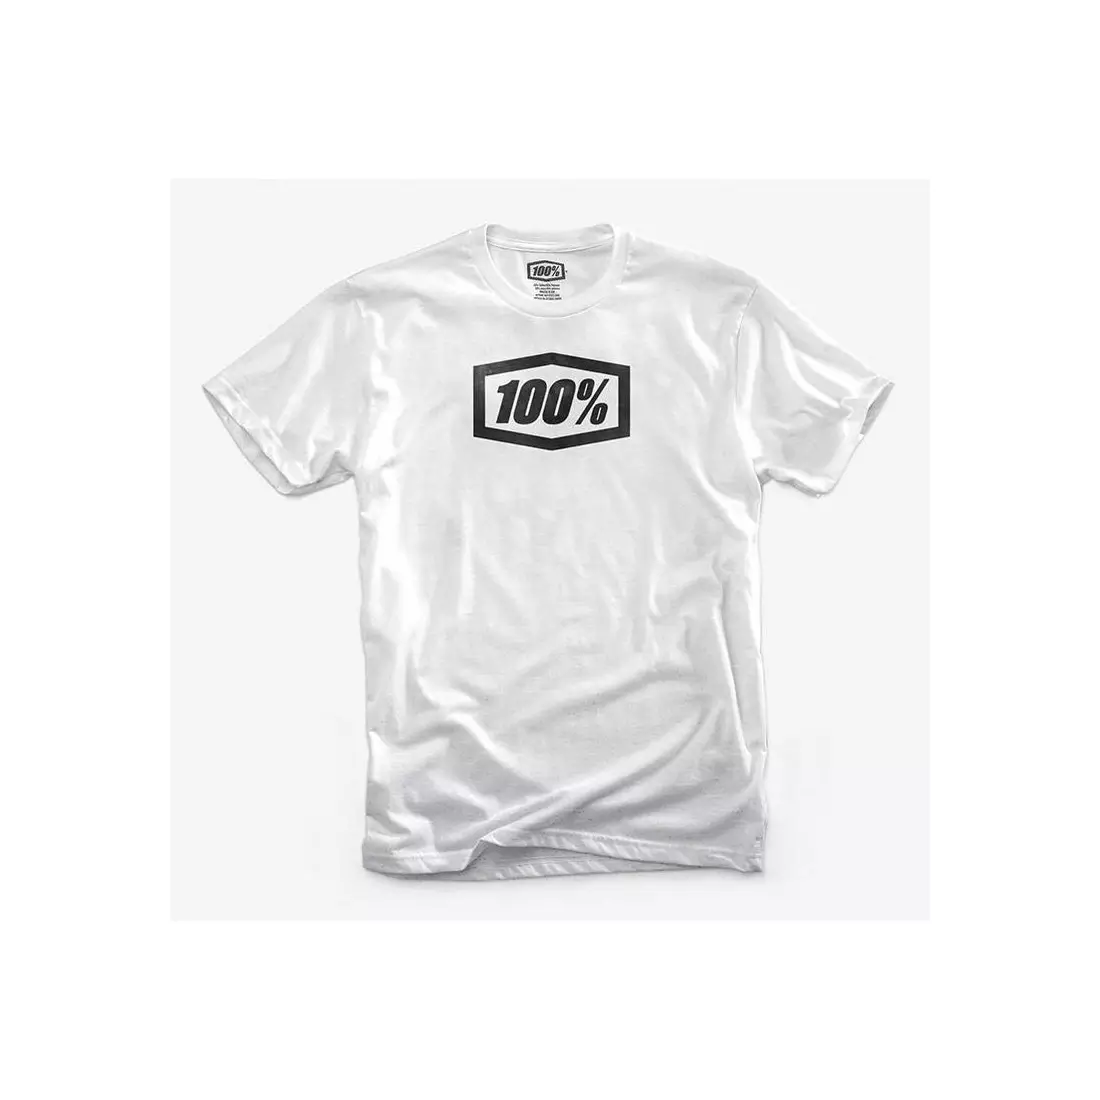 100% pánské tričko s krátkým rukávem základní bílé STO-32016-100-10